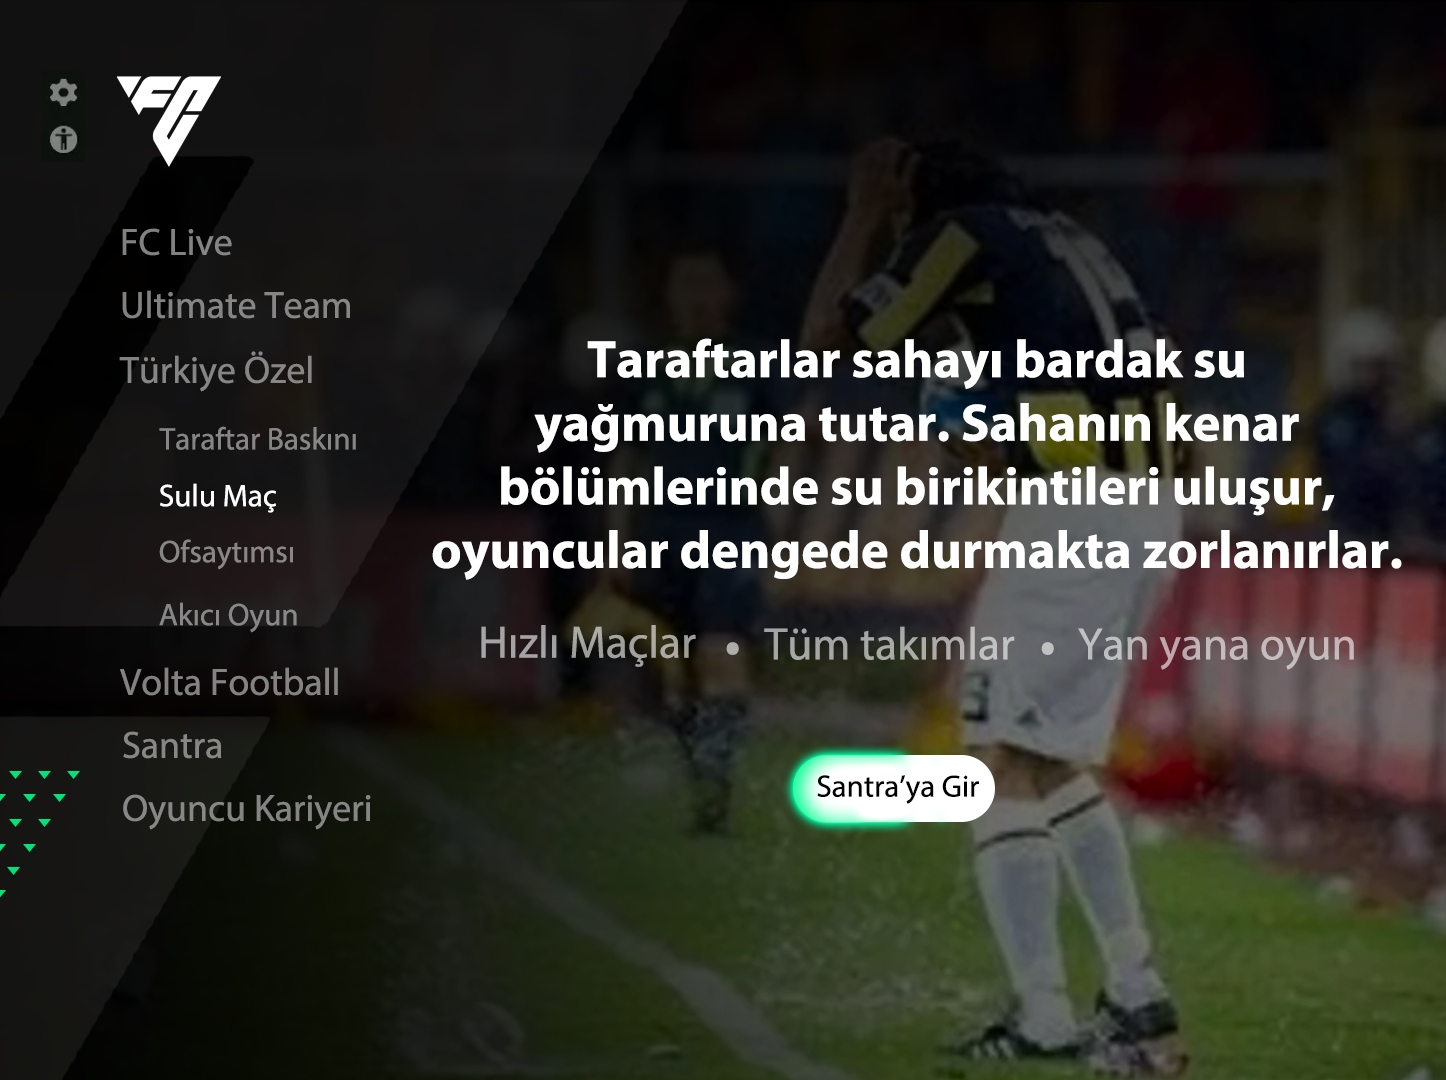 Meral Erden: Böyle Lige Böyle Oyun: Fc 24'Te Türk Futboluna Özel Modlar Ve Taktikler Olsa Nasıl Olurdu? 3